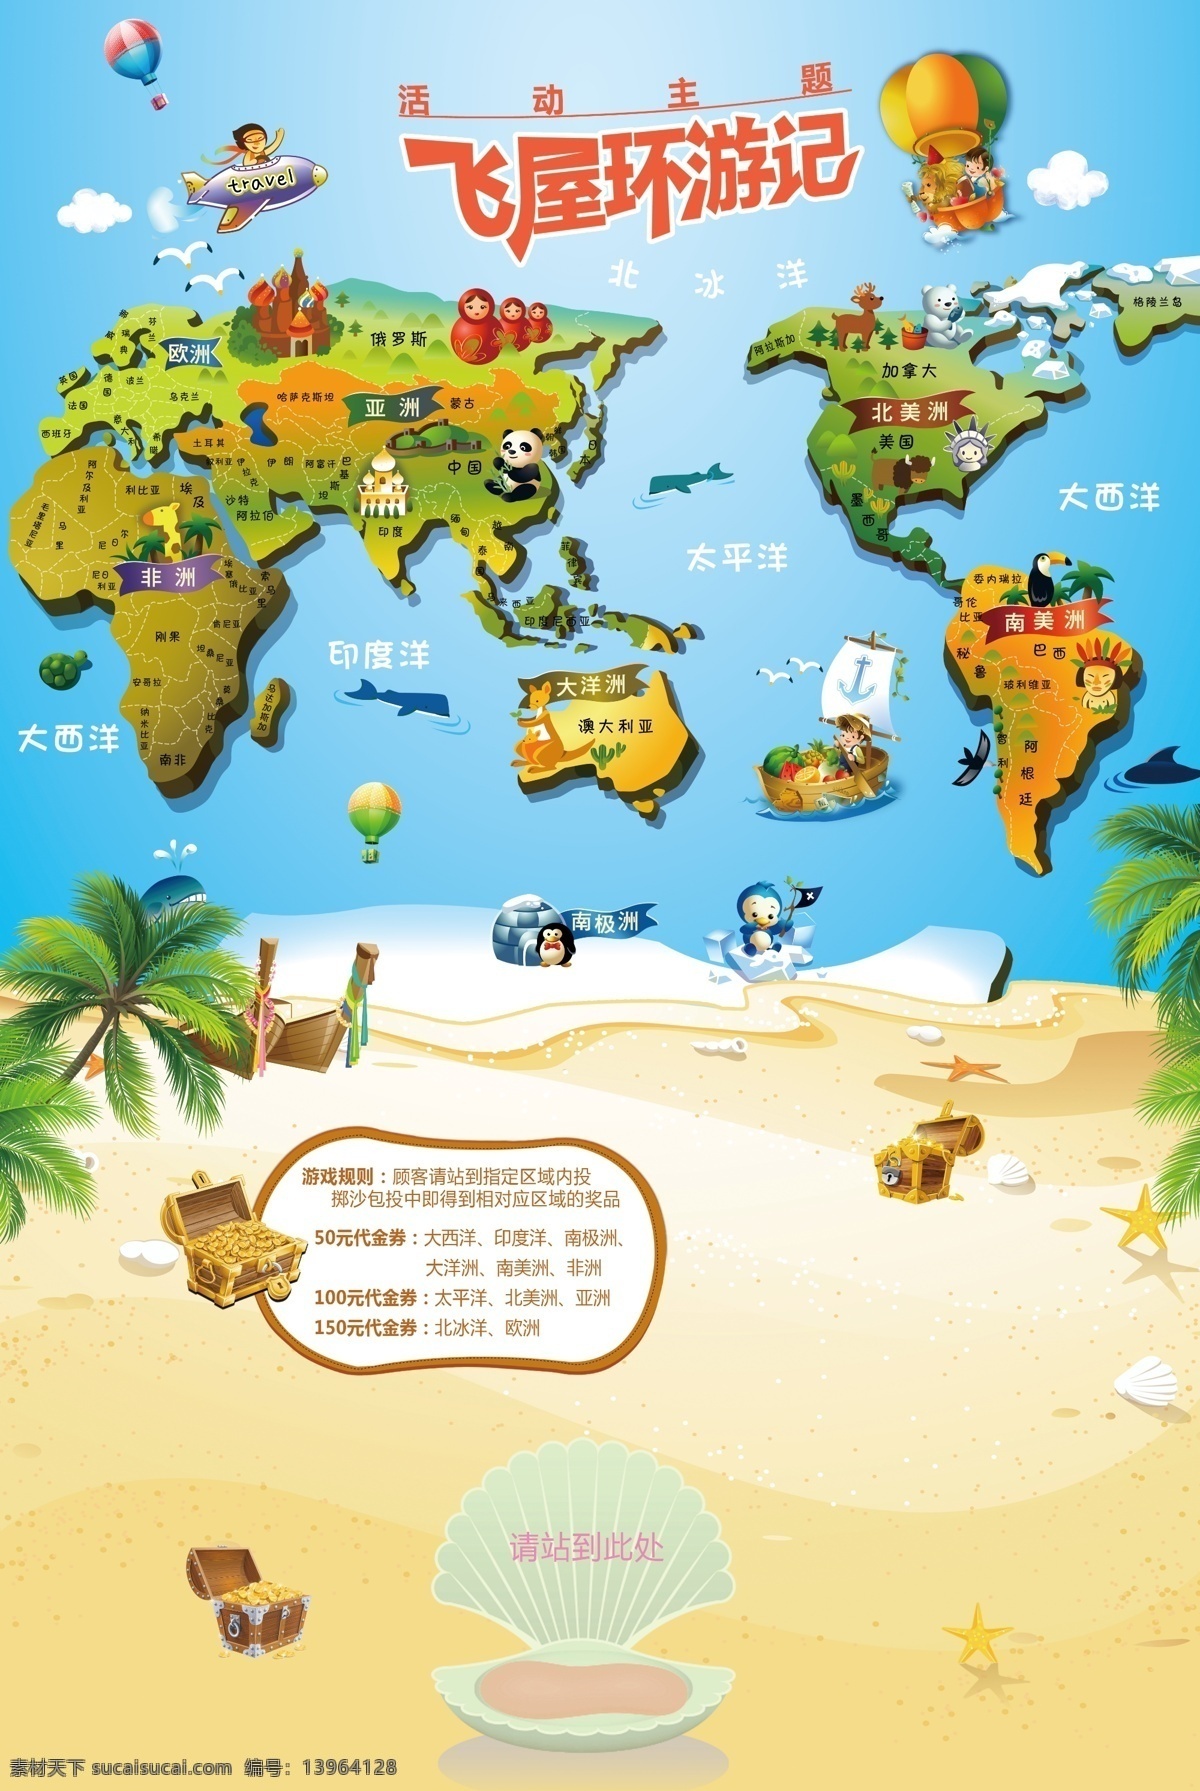 飞 屋 环 游记 卡通 世界地图 飞屋环游记 卡通世界地图 沙滩 贝壳 地贴 宝藏 游戏规则 热气球 飞机 卡通童趣 环游世界 卡通地图